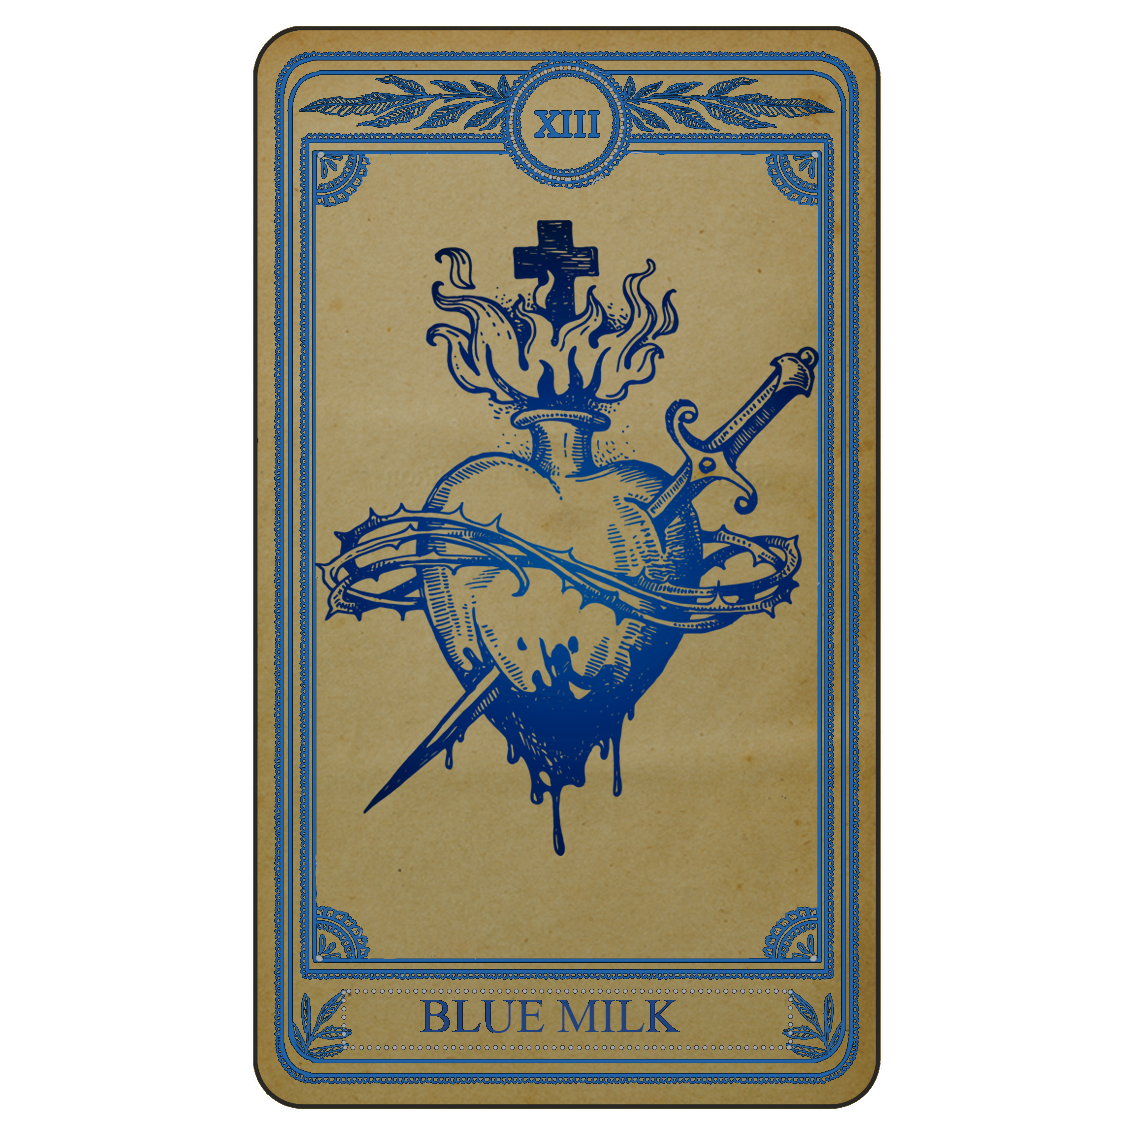 Artwork for blue milk